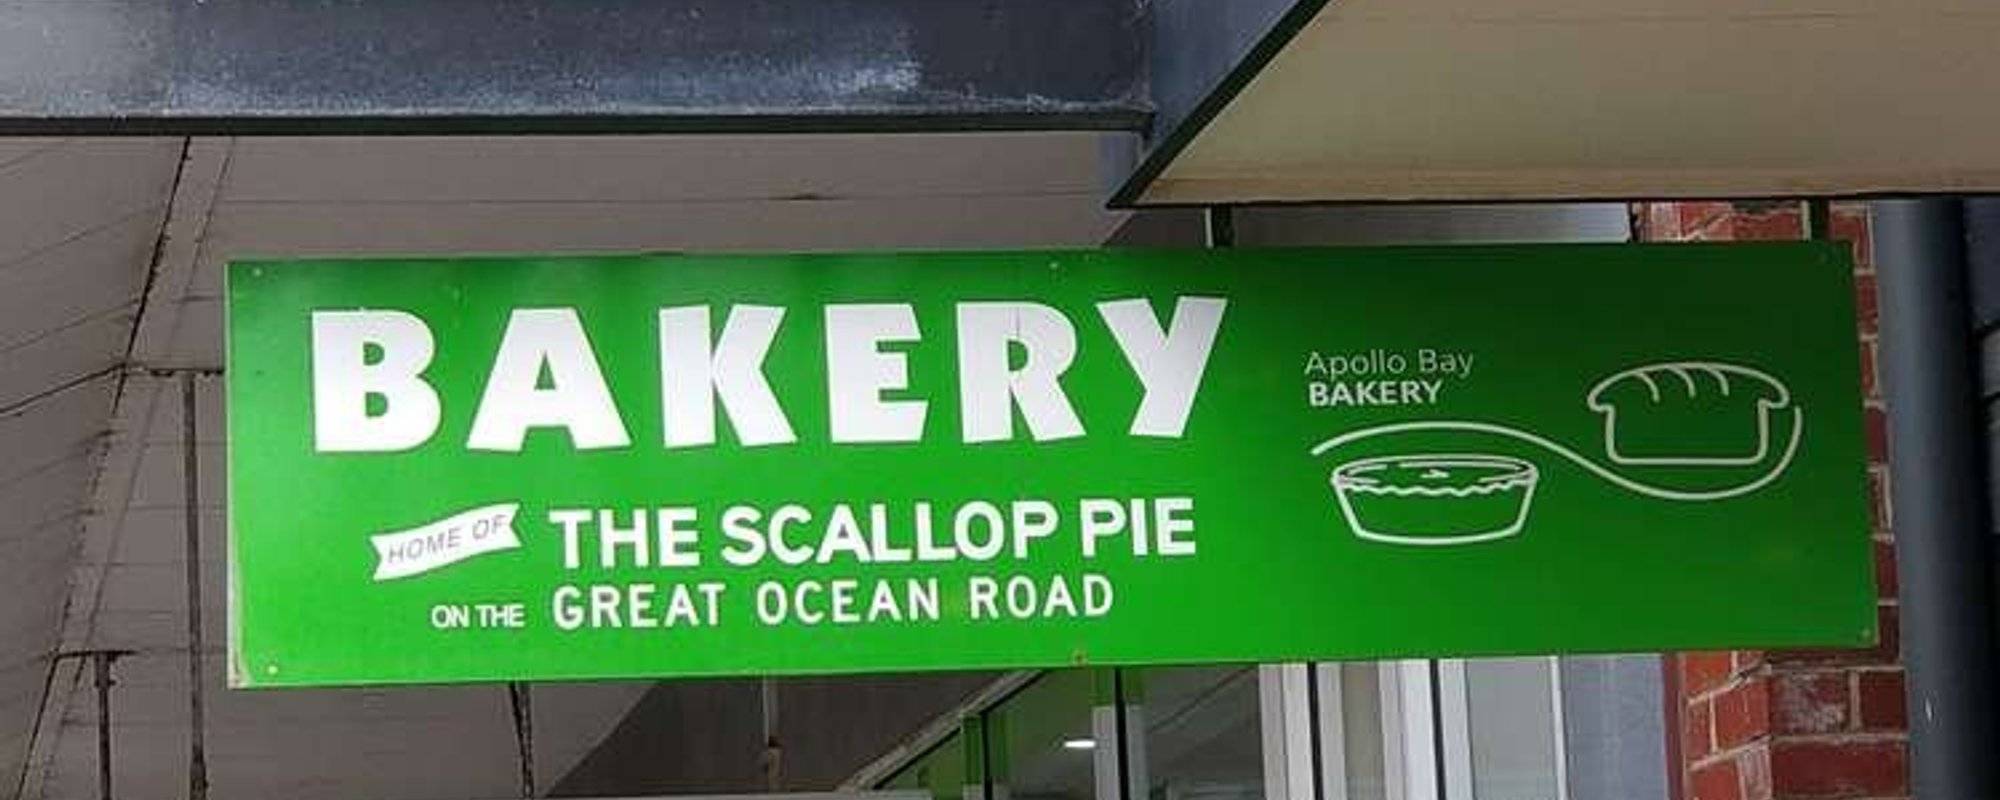 Apollo Bay Bakery (Apollo Bay, Australia): A Tasteem Review